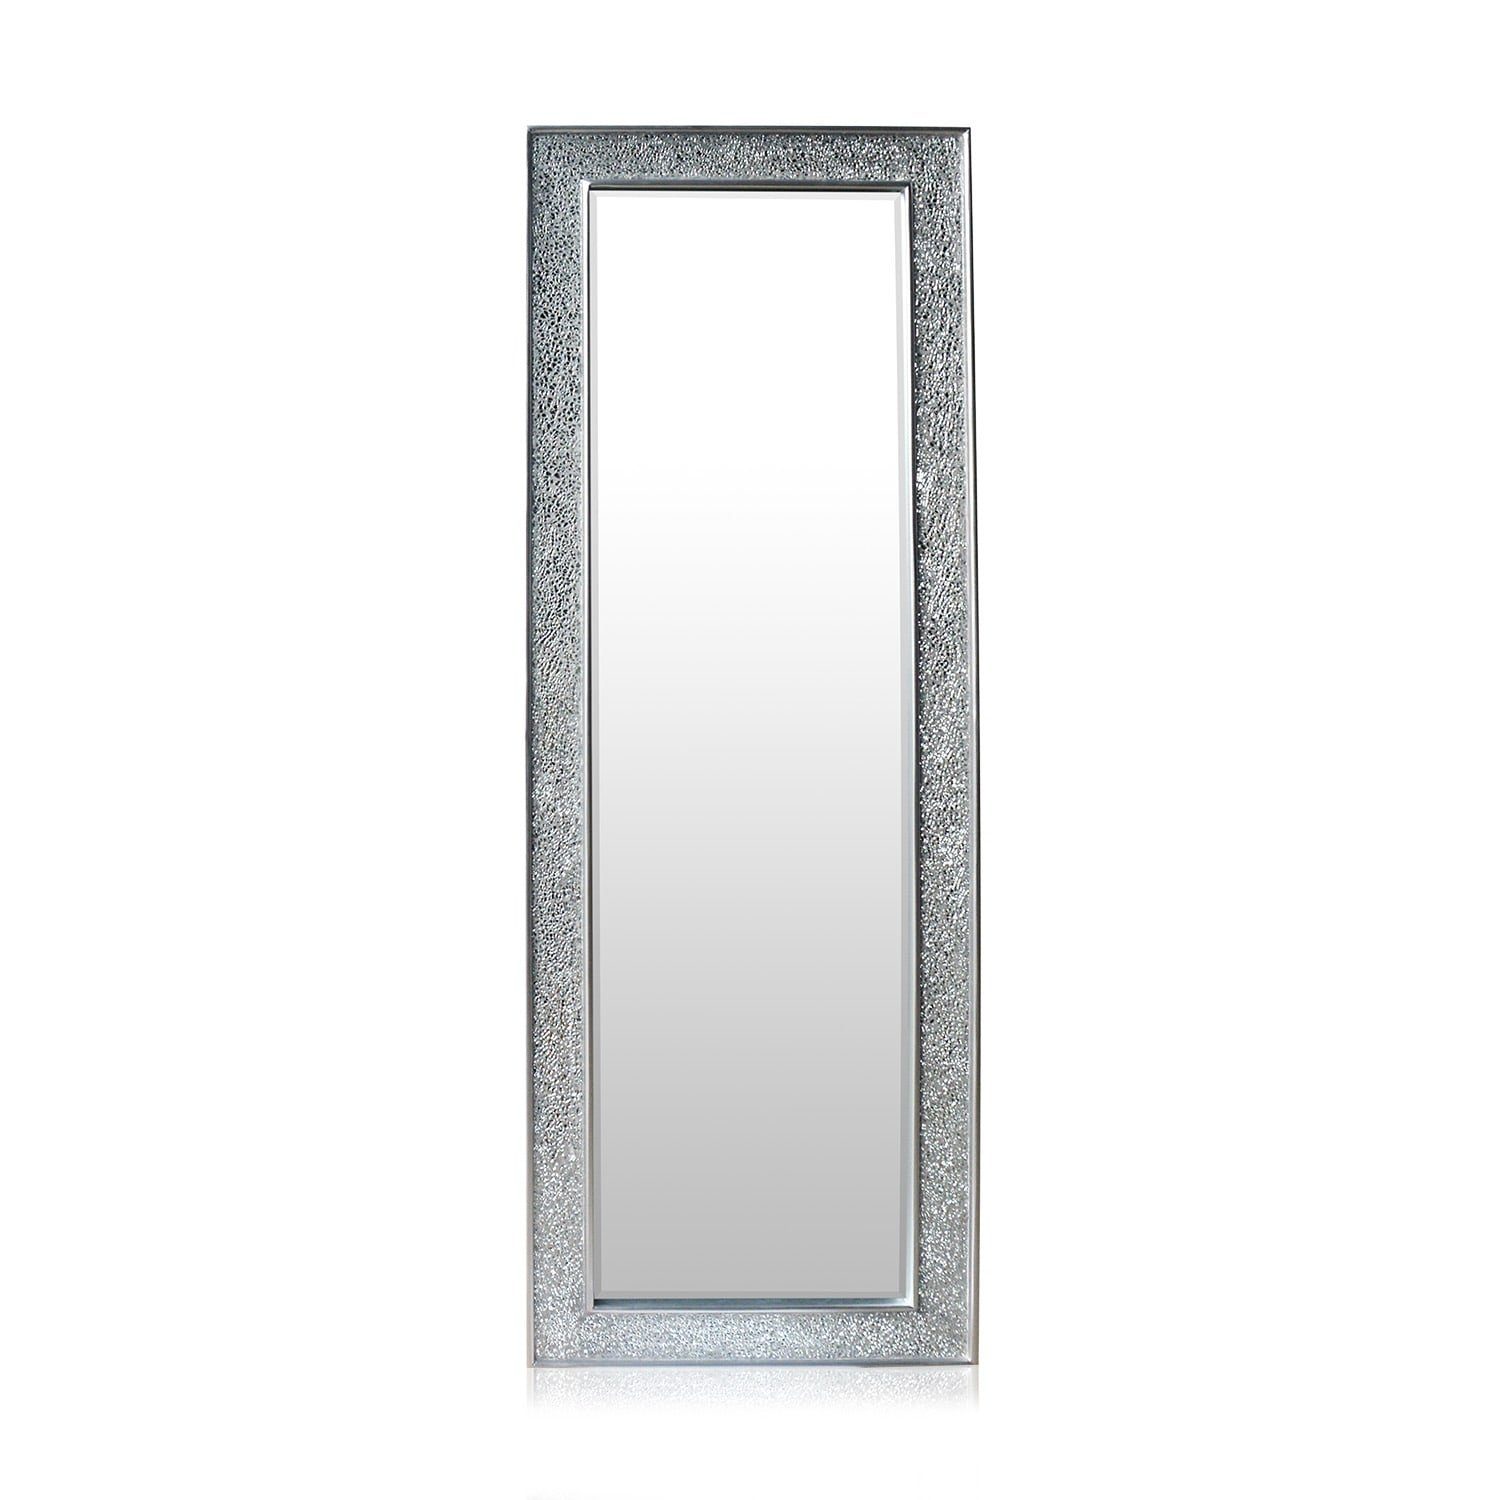 Casa Chic Spiegel Norwich Spiegel 130 x 45 cm Silber | Silber